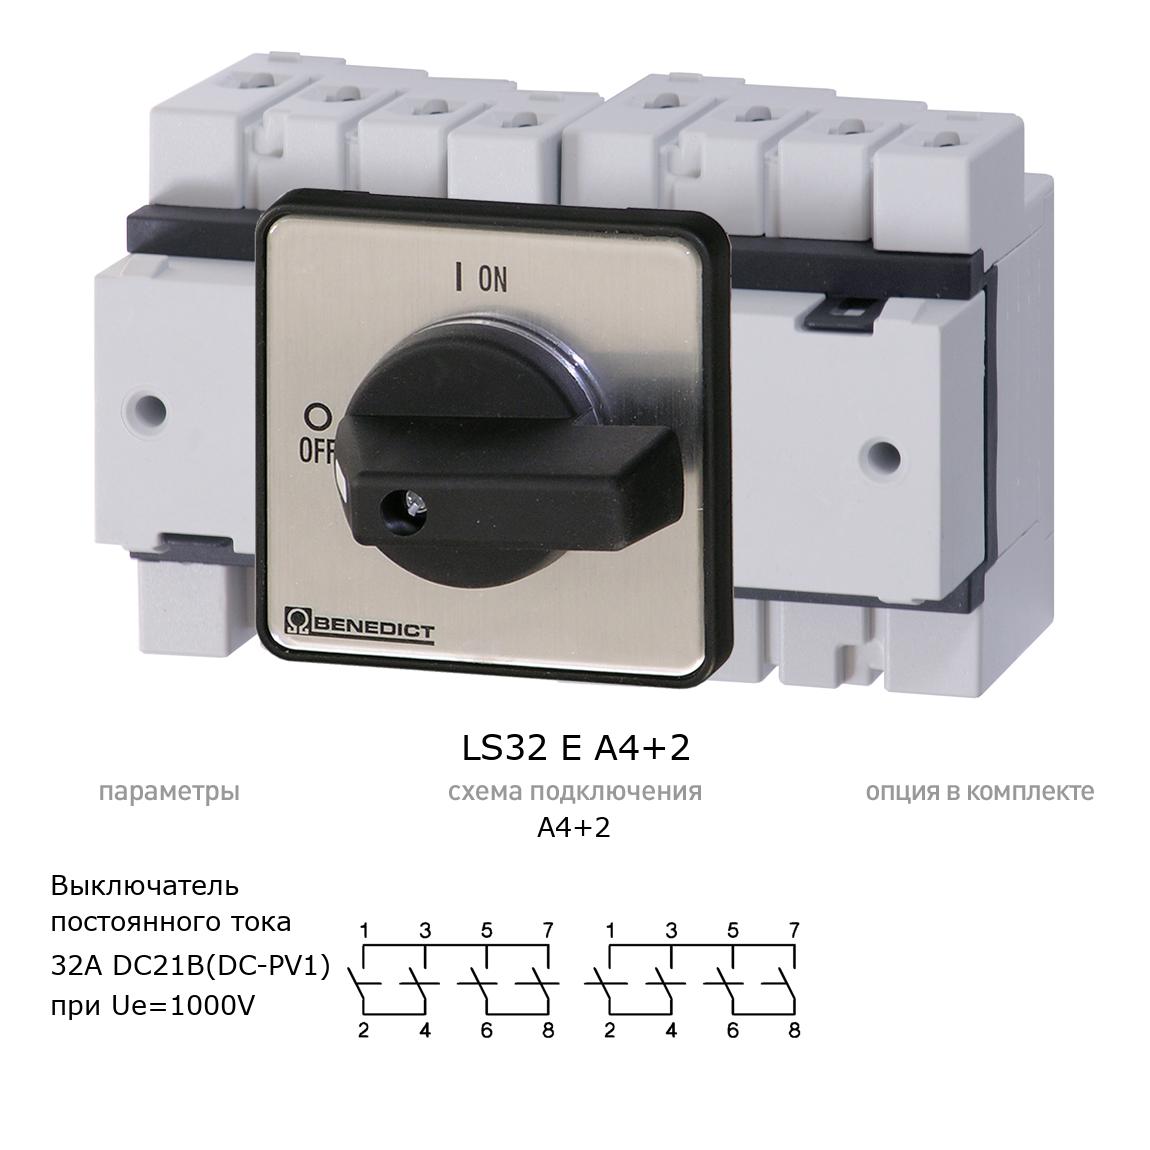 Кулачковый переключатель для постоянного тока (DC) LS32 E A4+2 BENEDICT